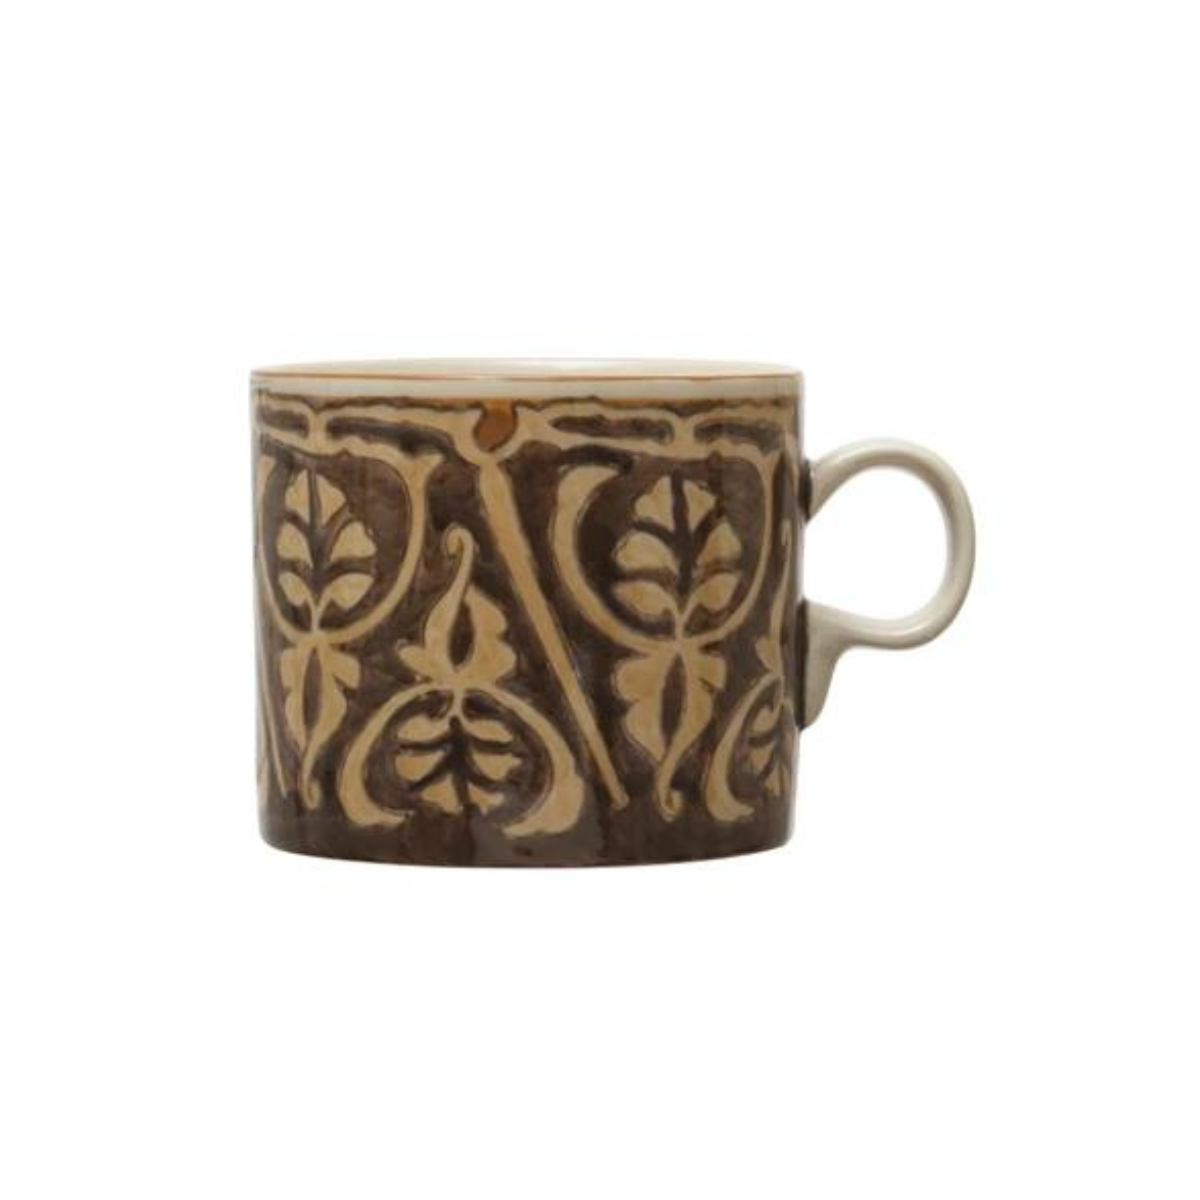 16 oz. Hand-Painted Stoneware Mug w/ Pattern